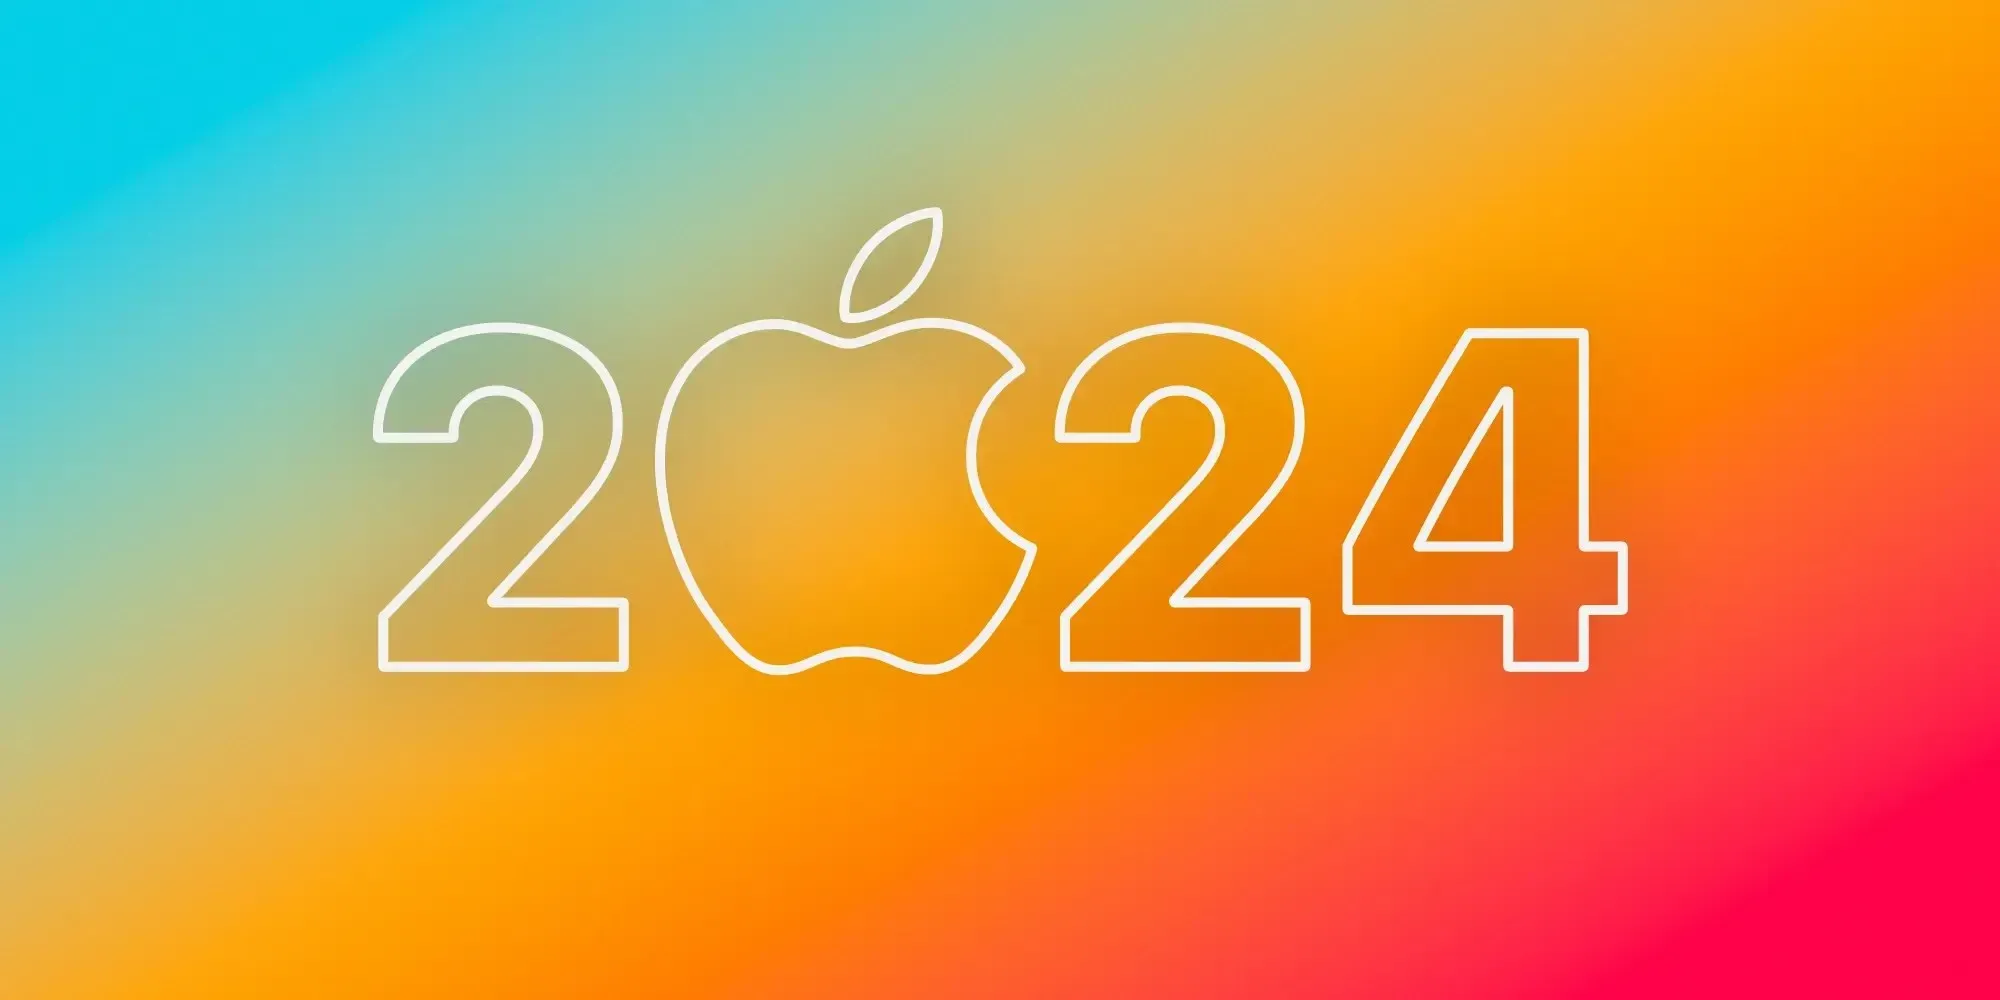 Tổng hợp sản phẩm Apple có thể sẽ ra mắt trong năm 2024